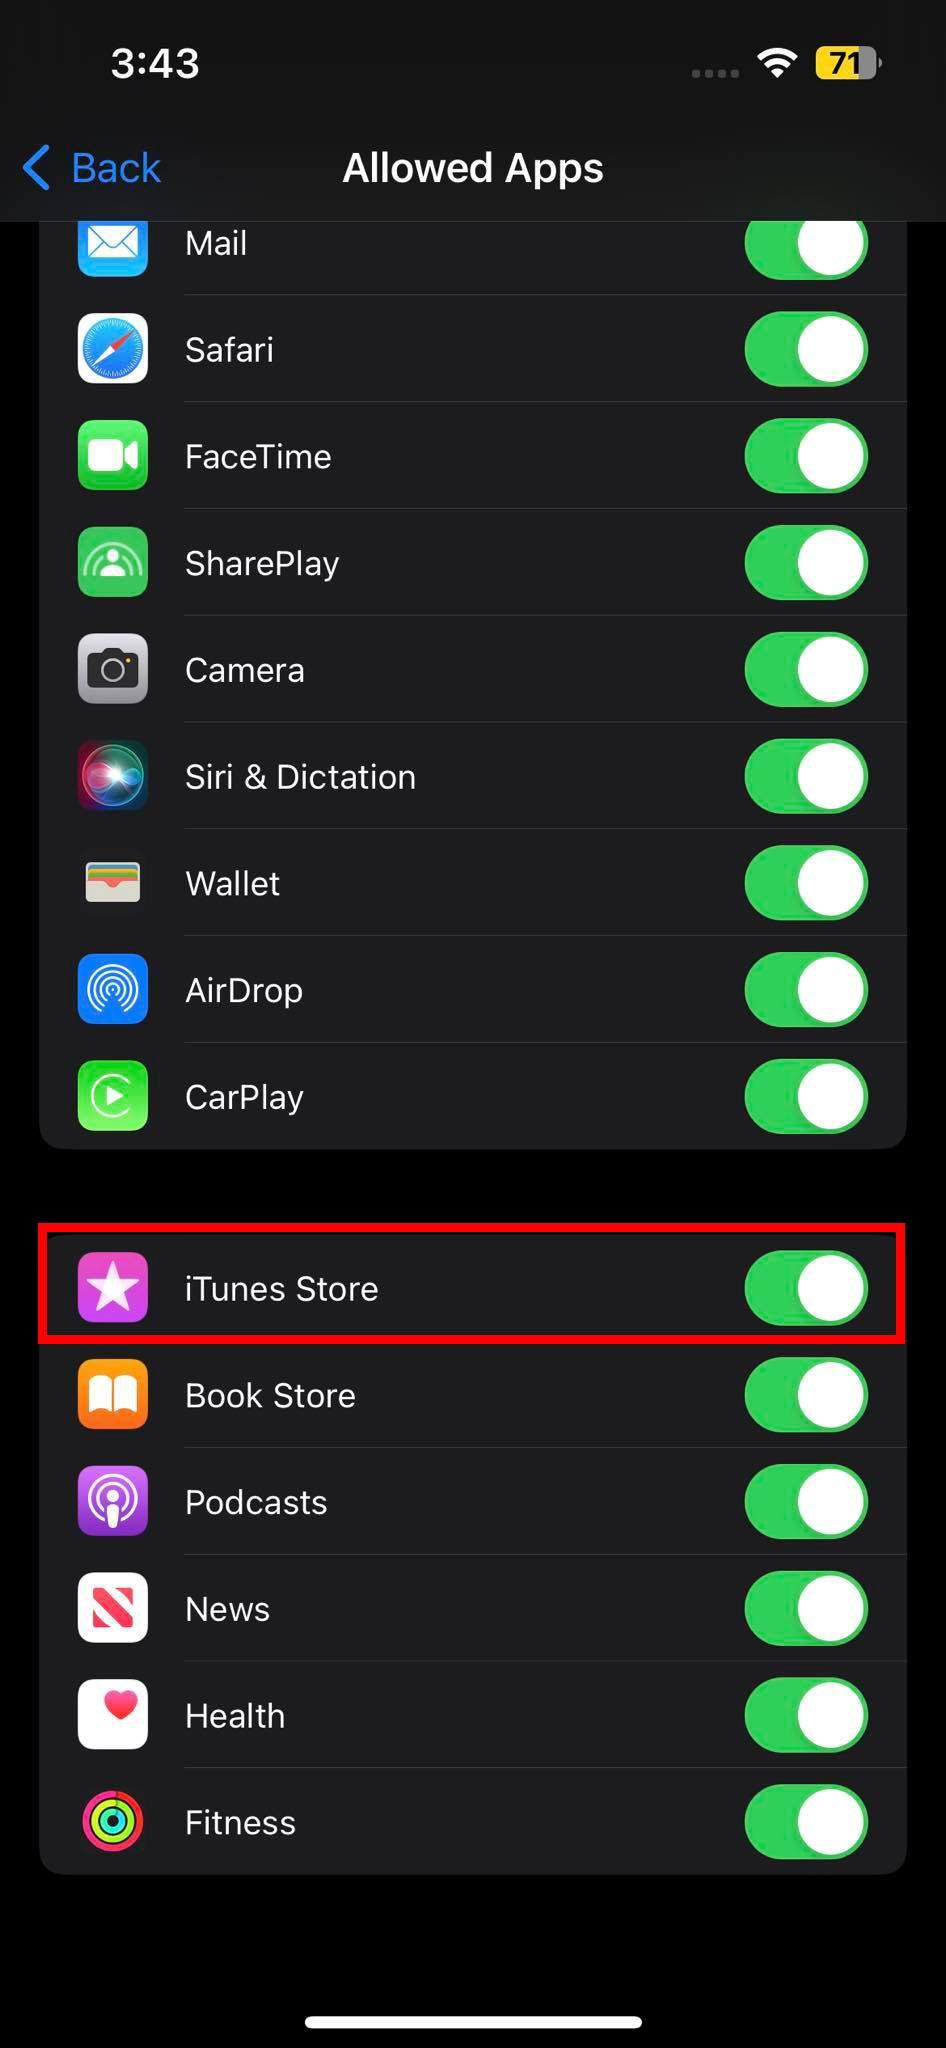 Como corrixir a música comprada por iTunes que non se mostra na biblioteca do iPhone